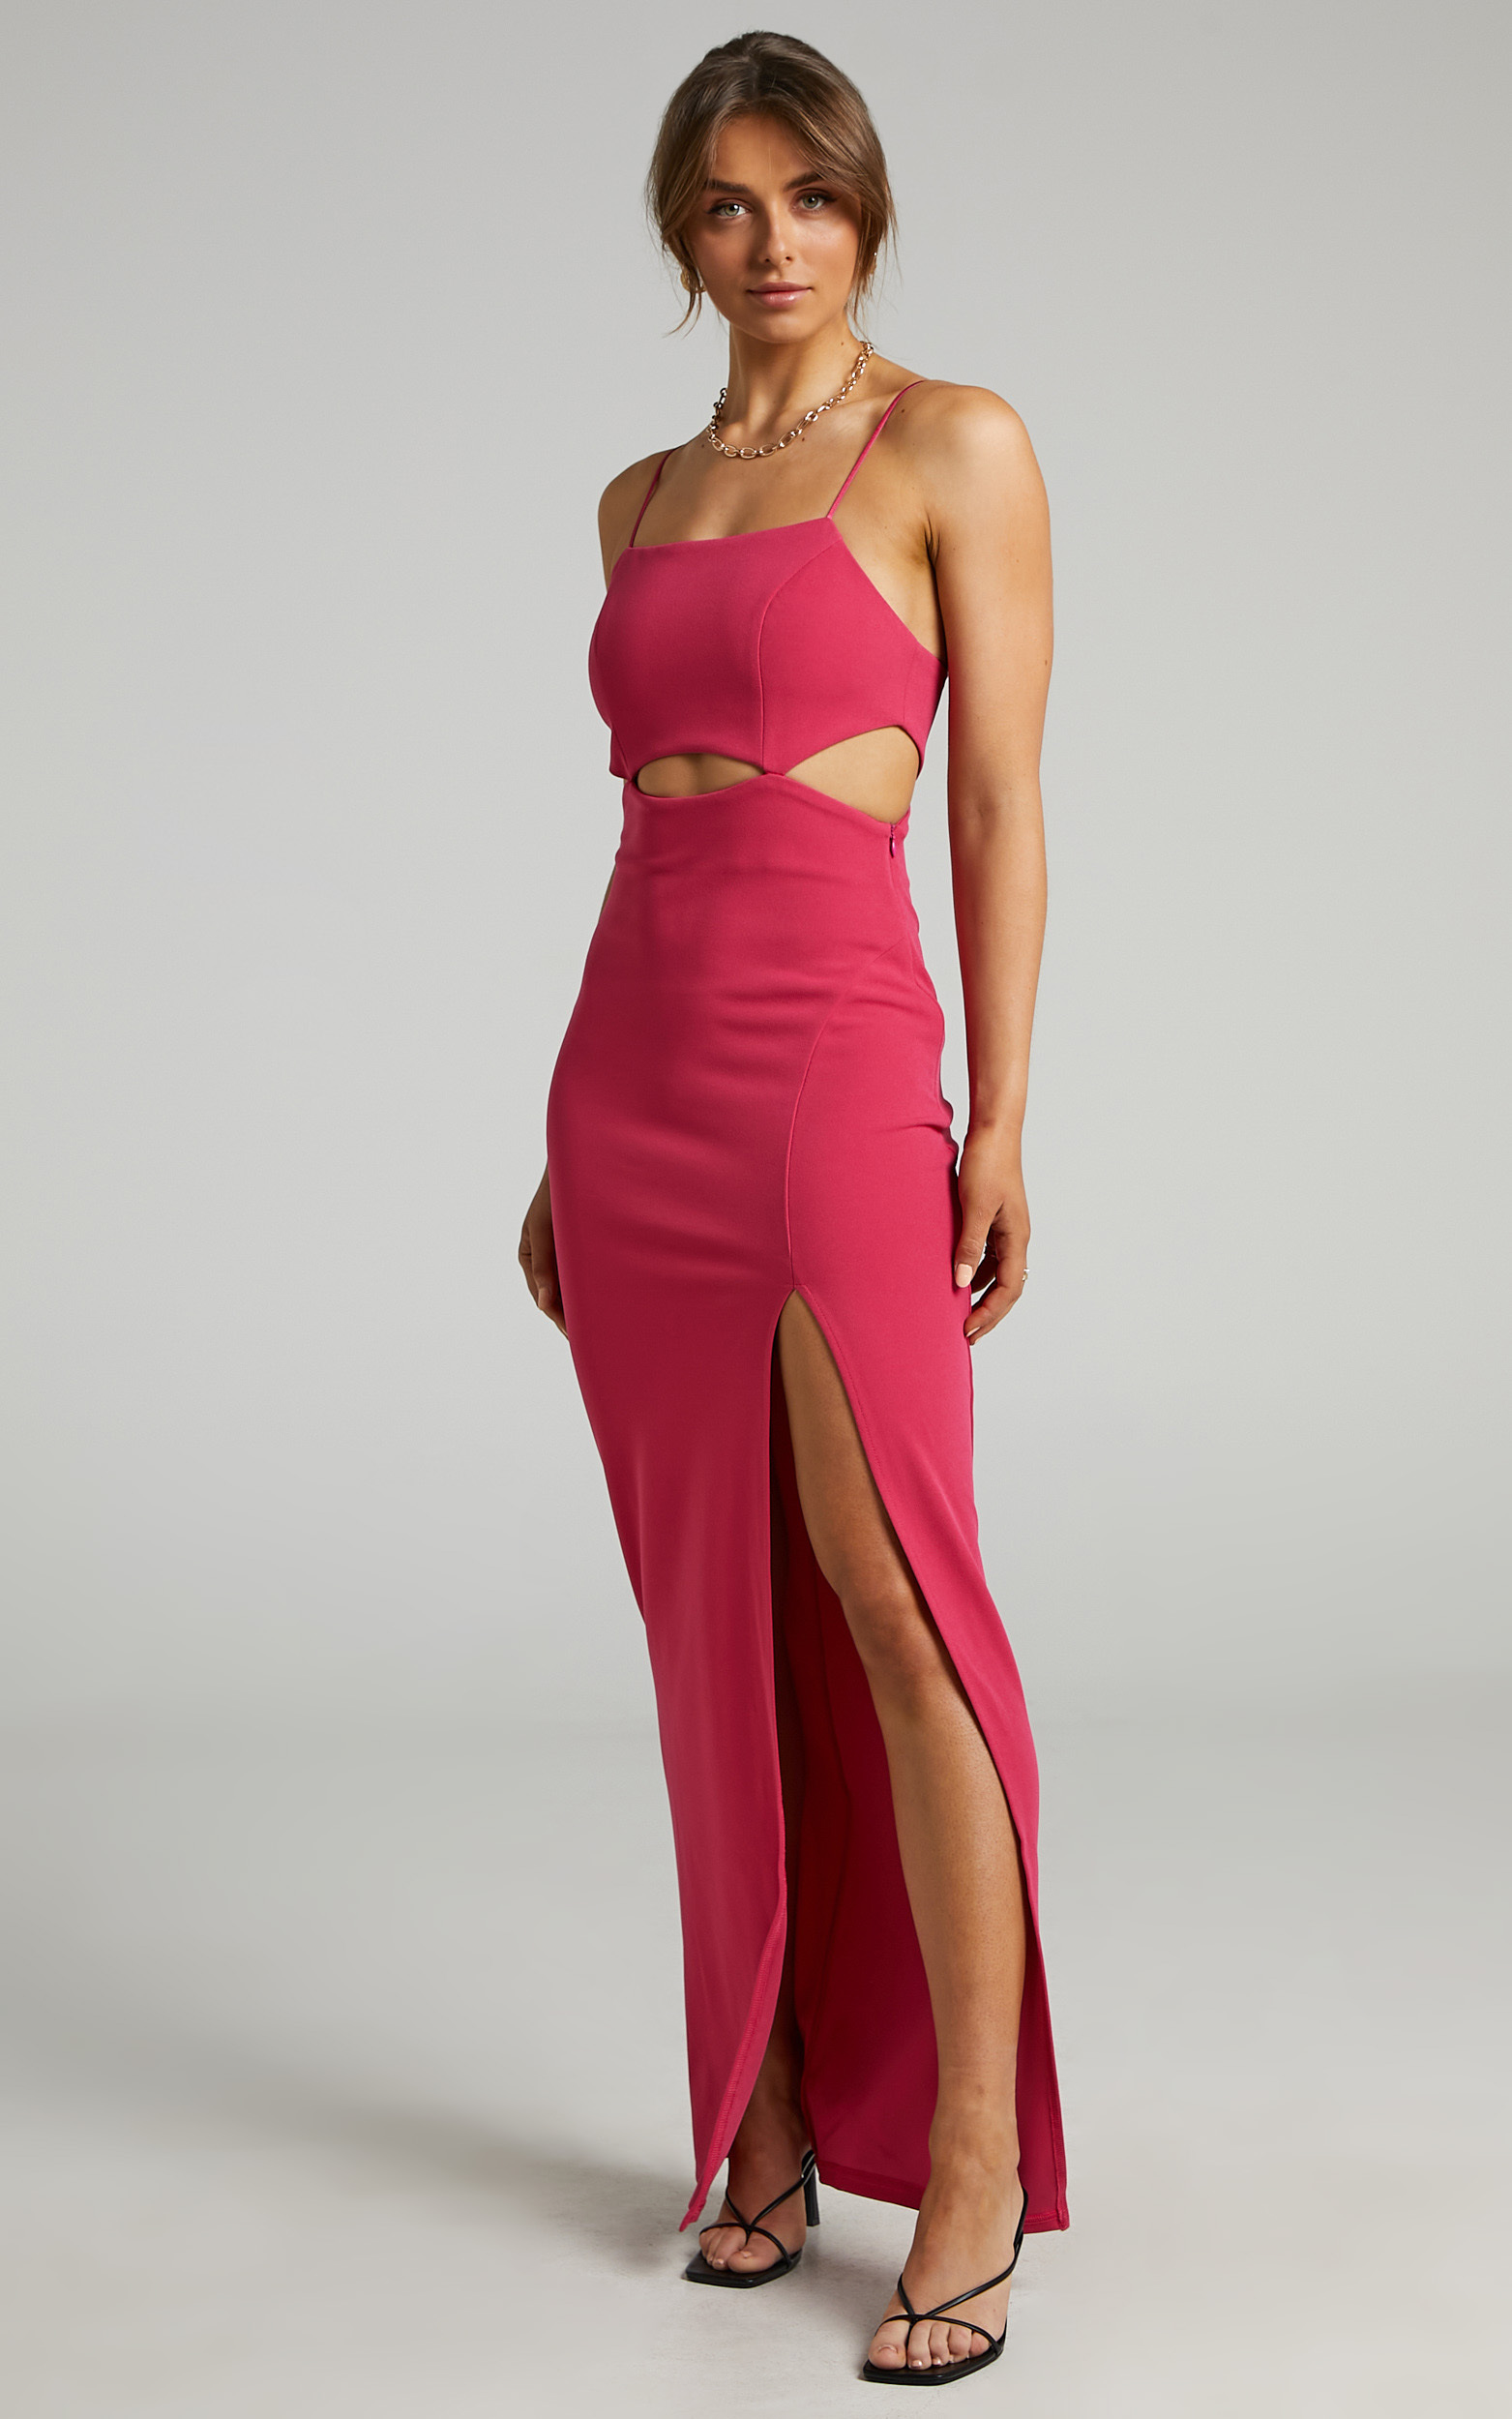 Monet Cut Out Underbust Dress in Hot Pink | Showpo